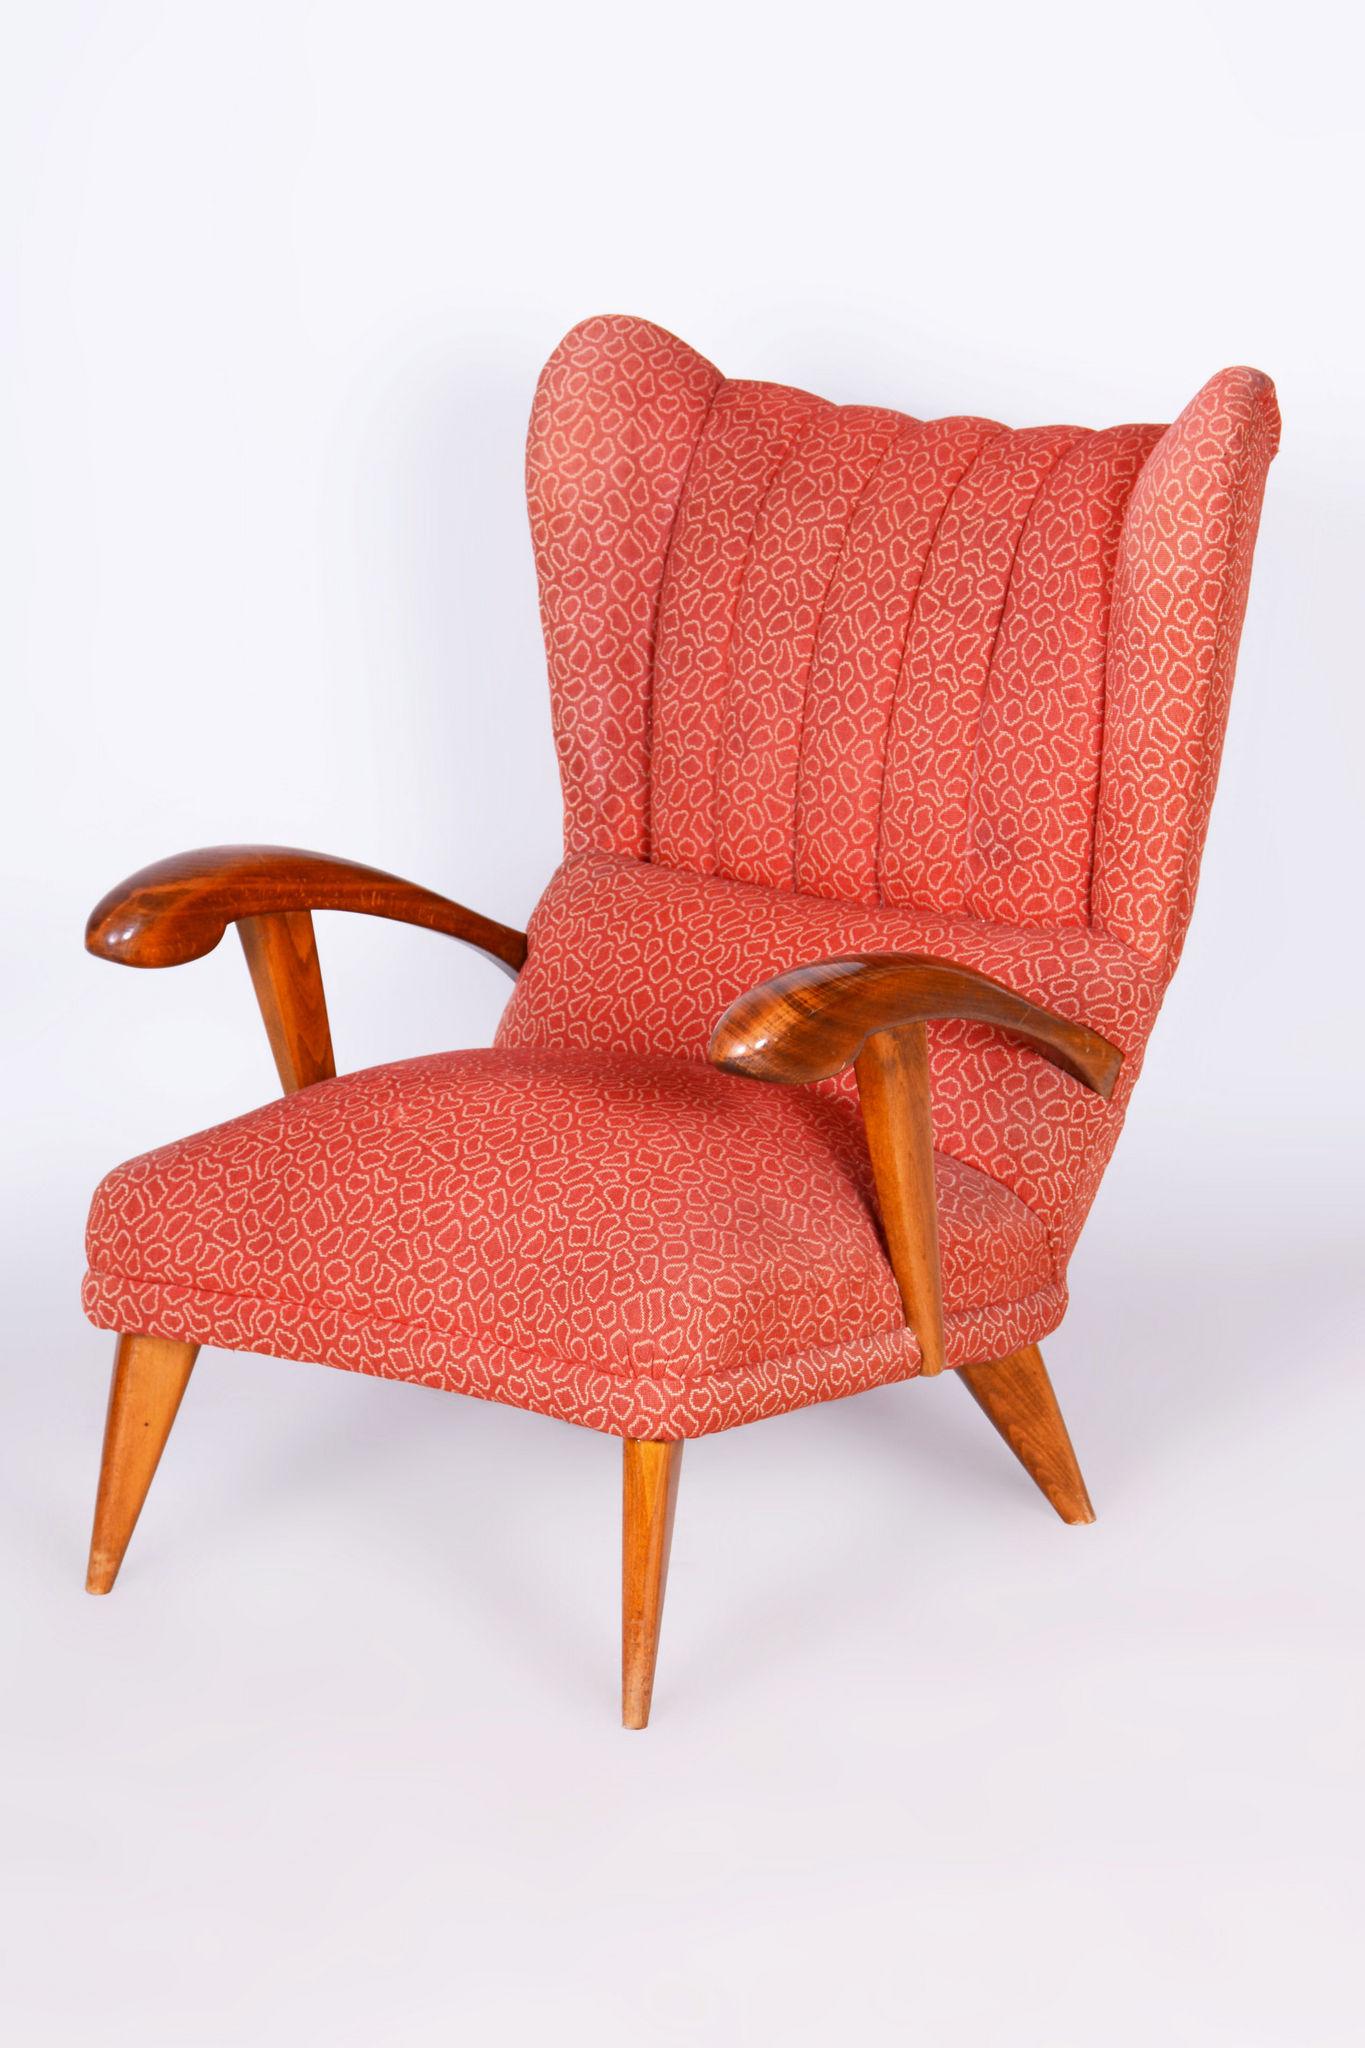 Der sehr bequeme und beliebte Sessel wurde von dem Architekten Jan Vaněk in der Anfangszeit seines Schaffens entworfen.
Die traditionelle Federpolsterung ist original, gut erhalten und unbesetzt. Der von Professor Antonín Kybal entworfene